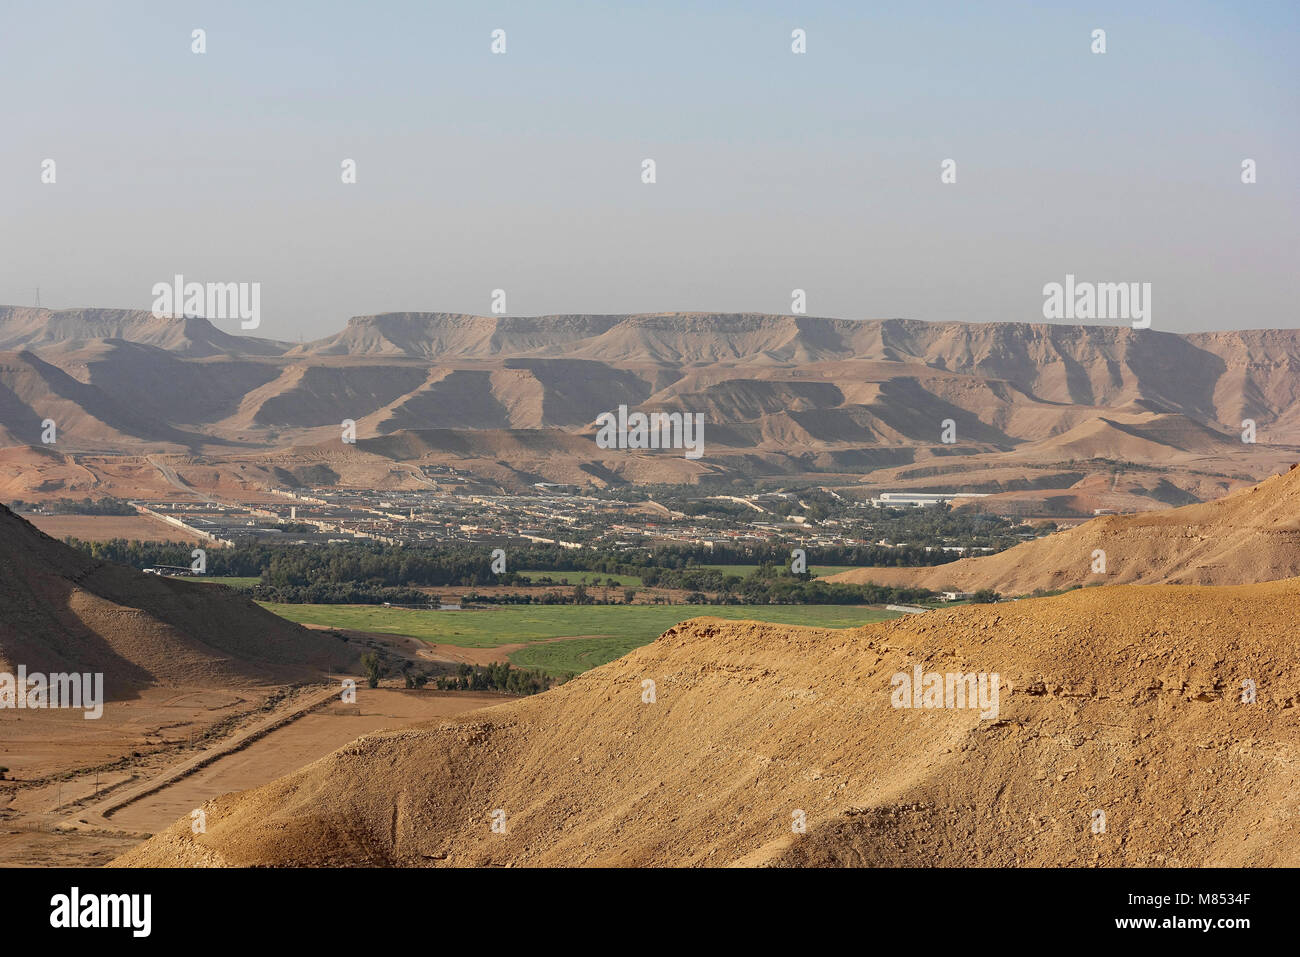 Beasha Ville Vallée, Riyad Arabie Saoudite. Photo prise d'un point de vue en descendant le plateau dans le désert, juste au sud de Riyad. Banque D'Images